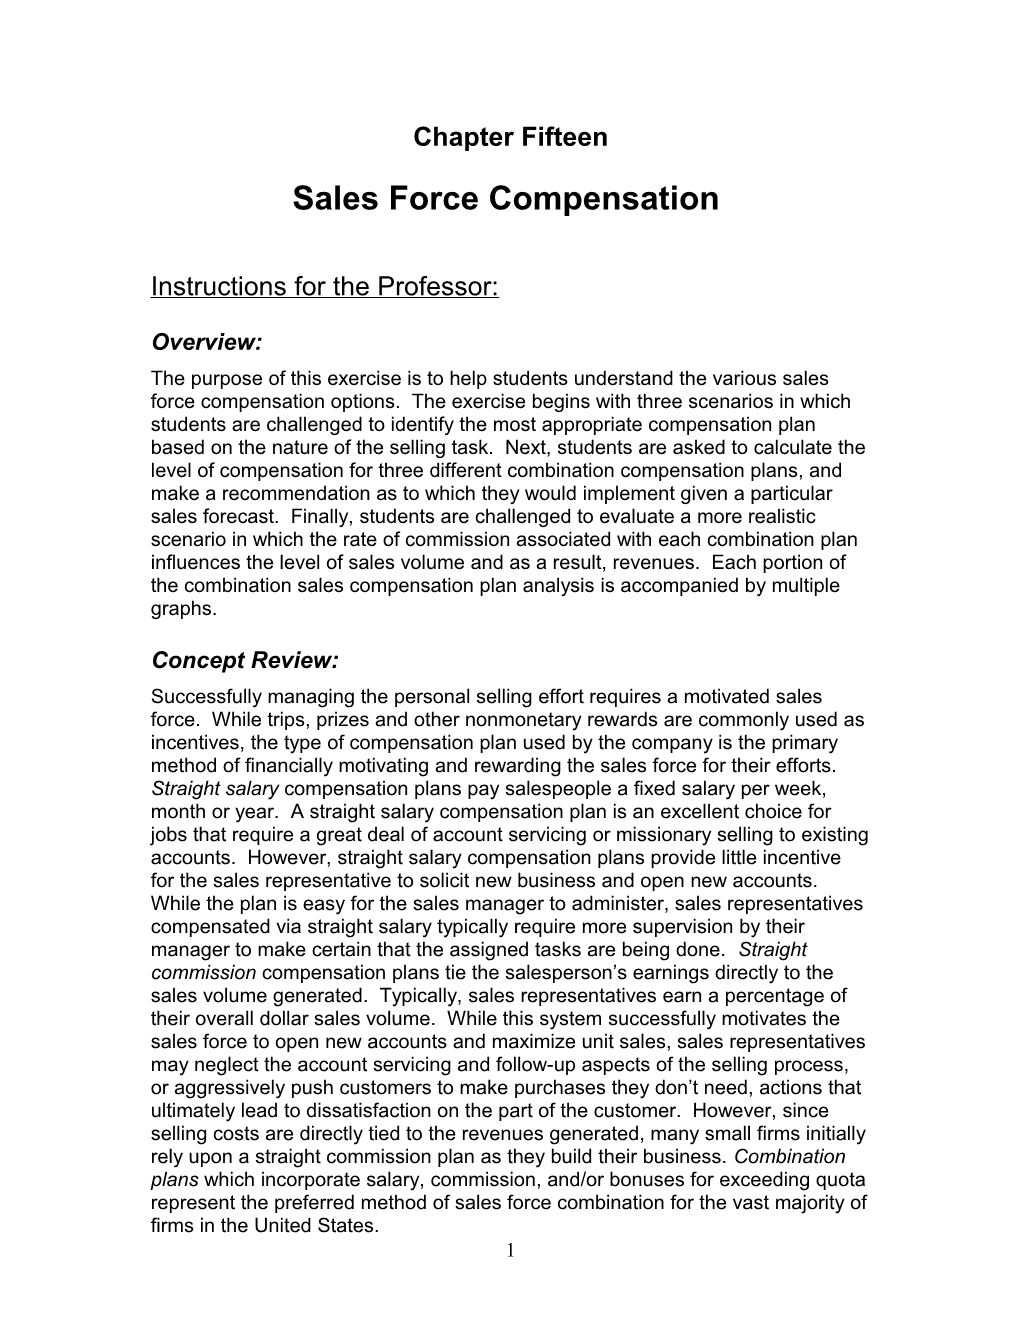 Sales Force Compensation